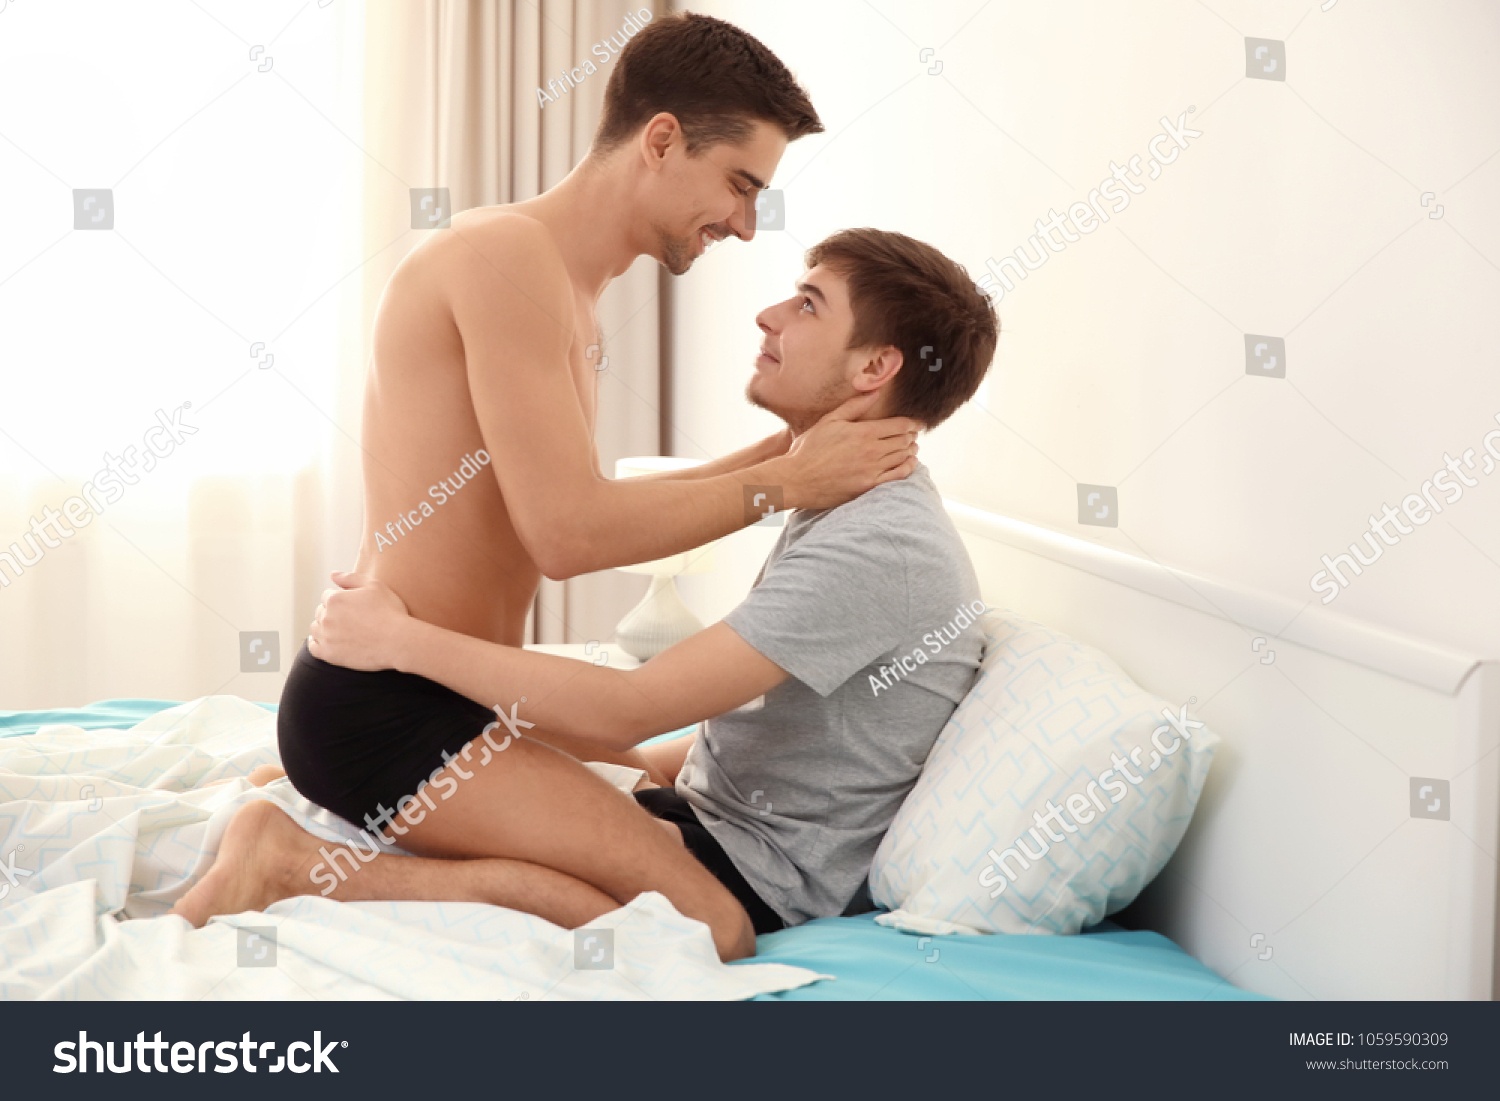 Два Парня Занимаются Сексом На Кровати